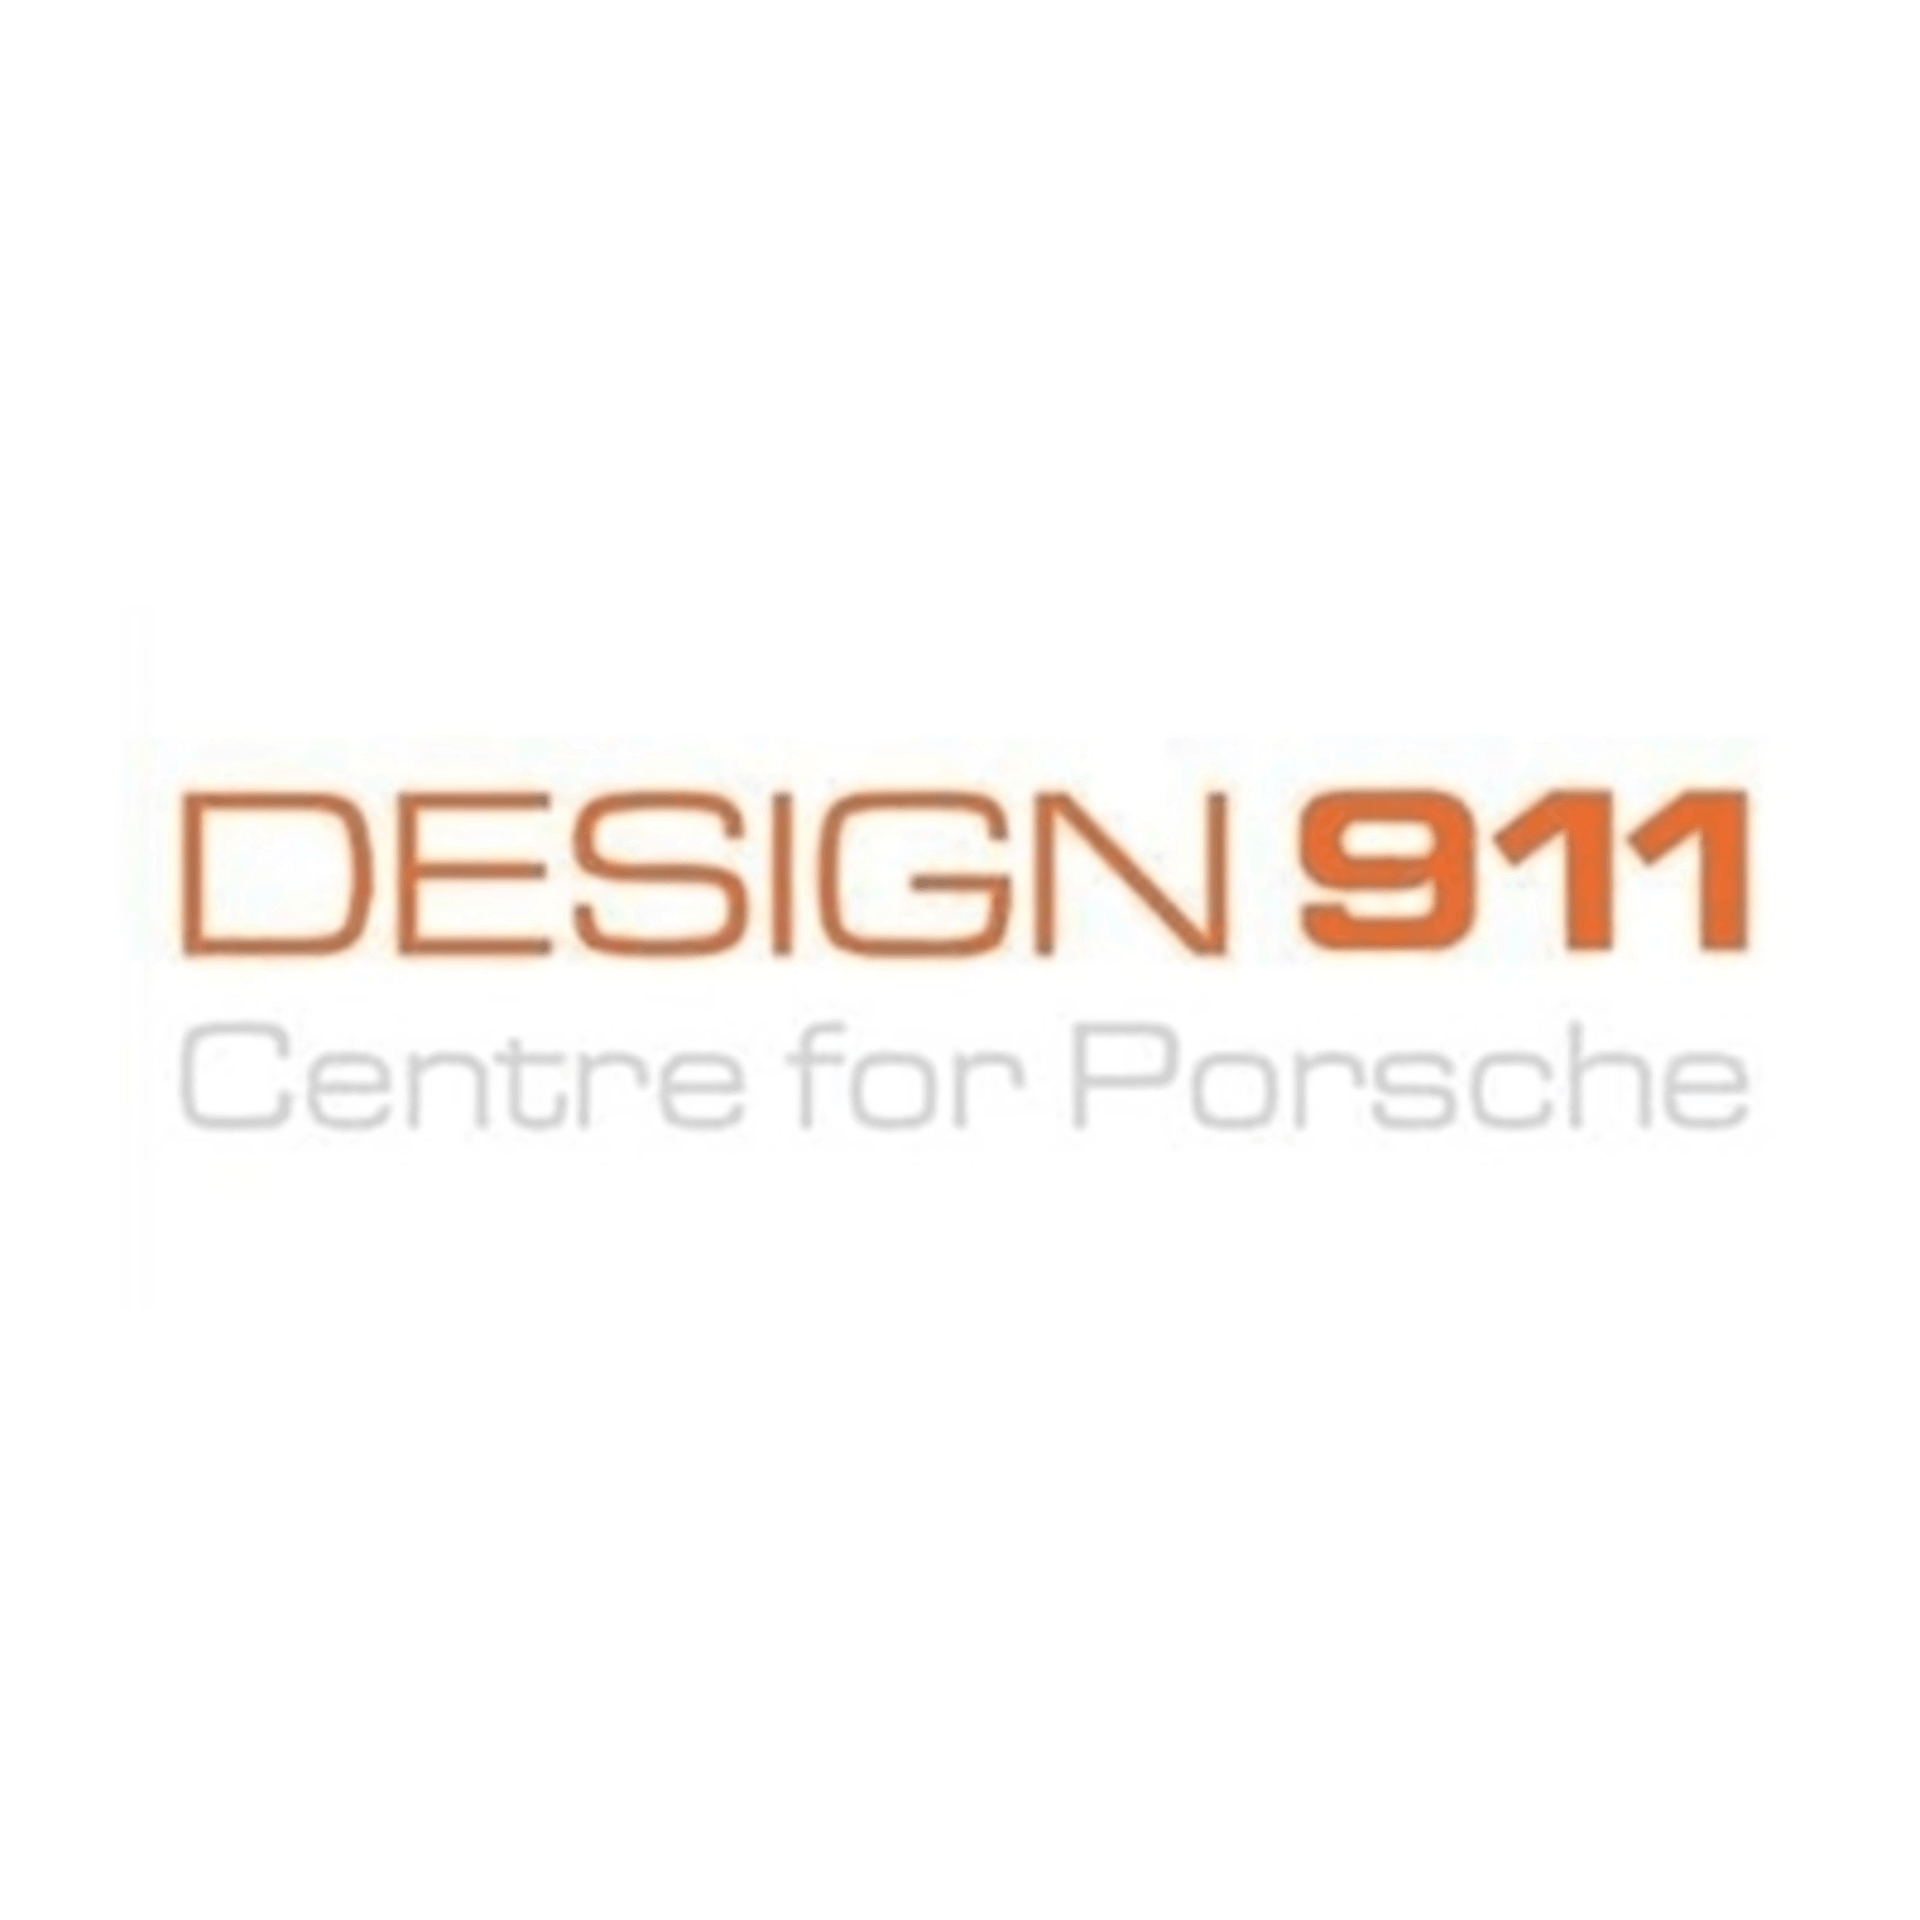 Design 911